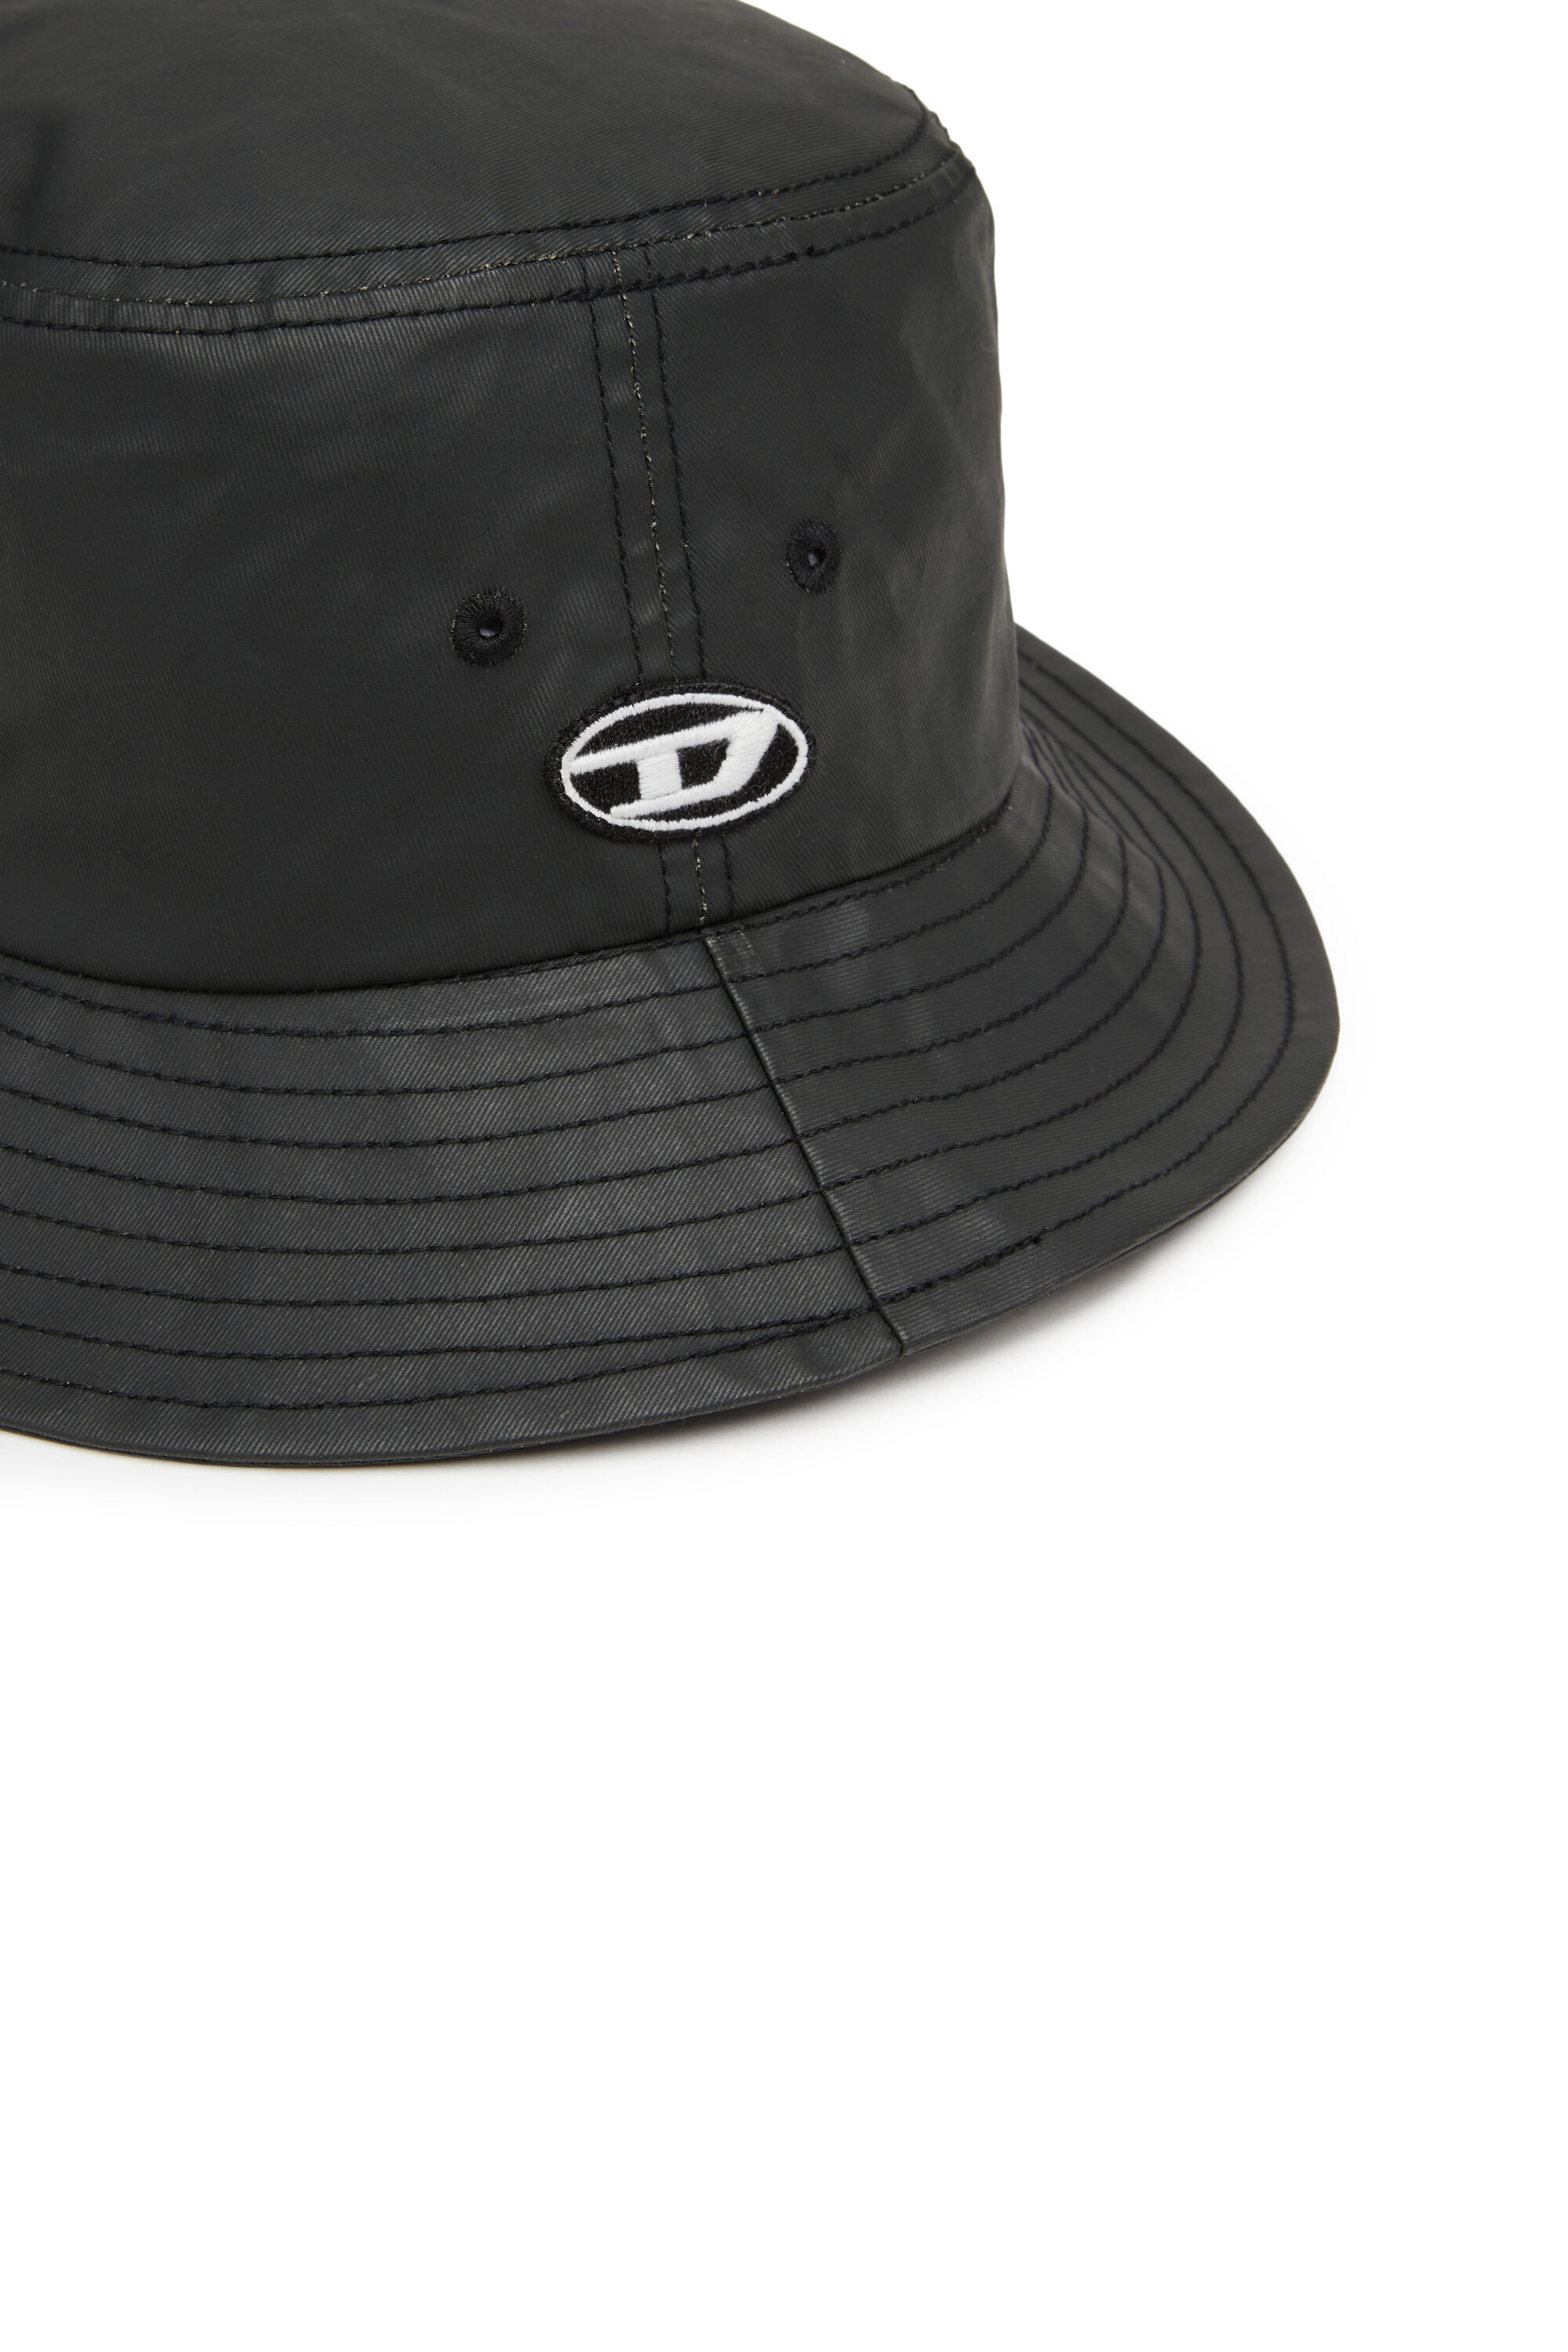 Men's Bucket hat in coated twill | C-FISH-COAT Diesel